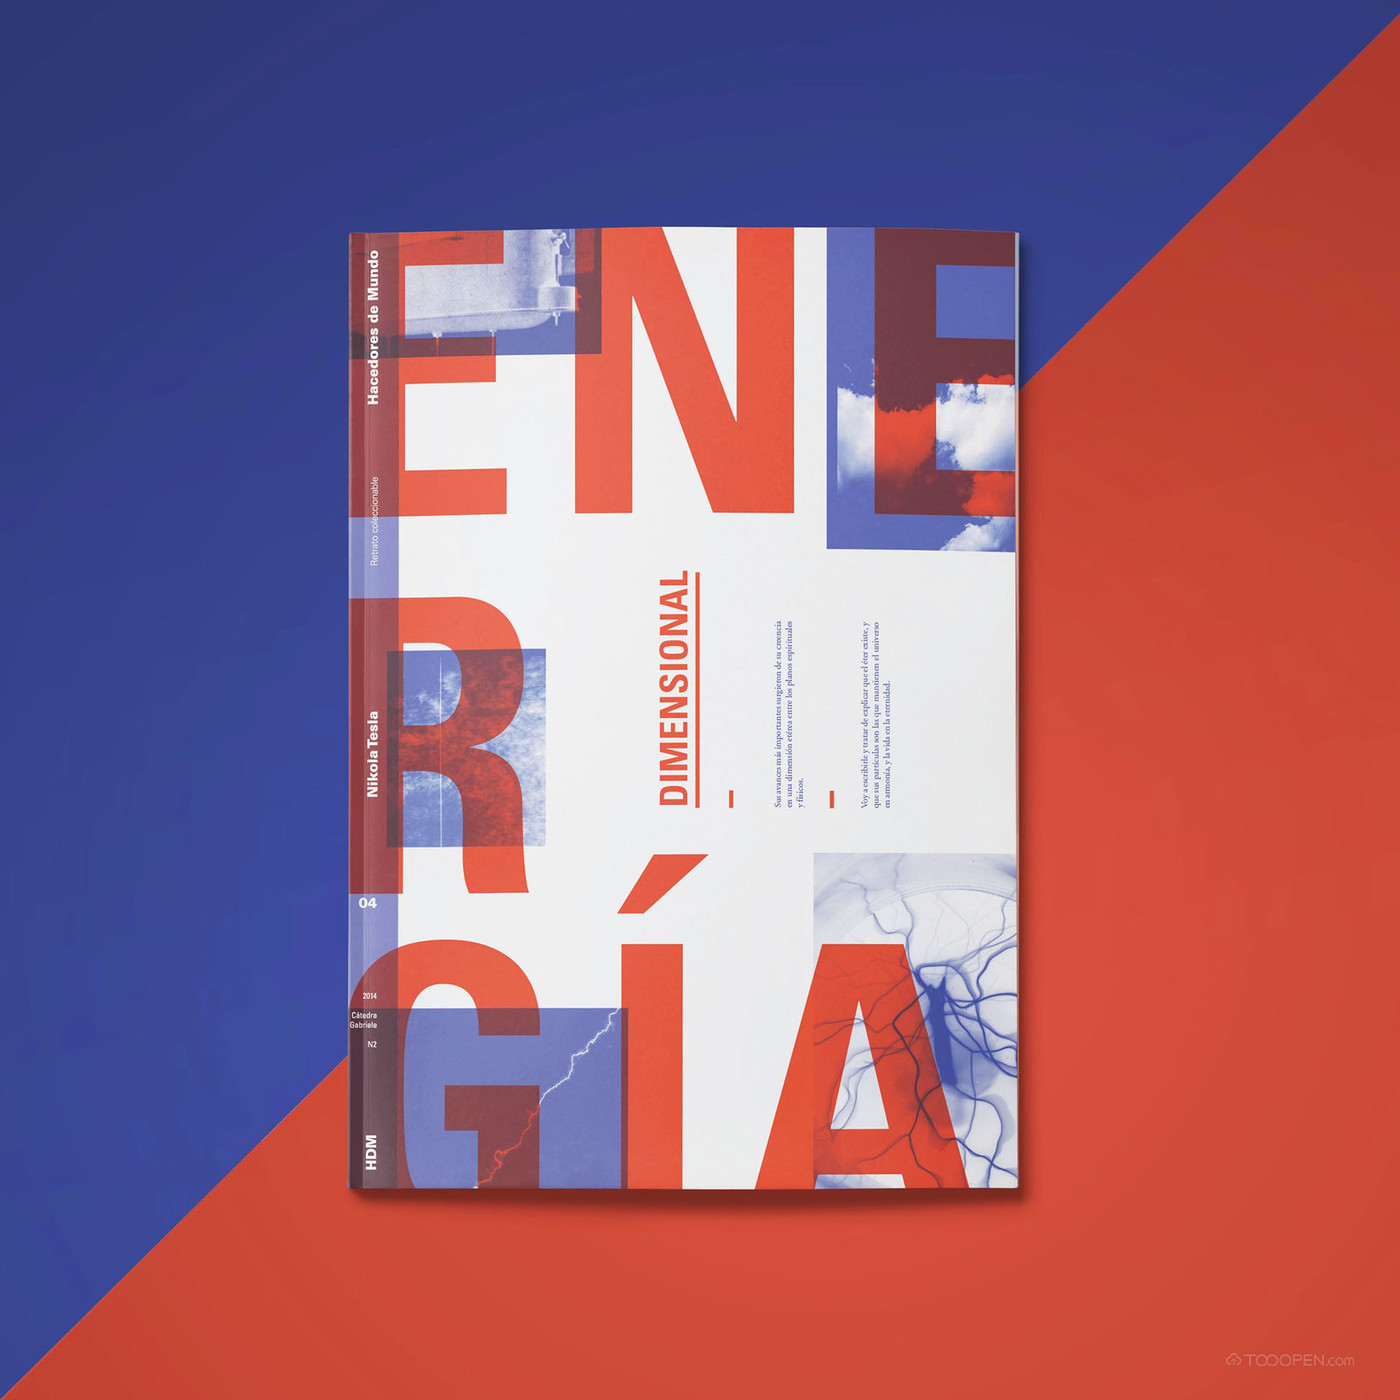 国外能源空间研究杂志画册设计欣赏-01